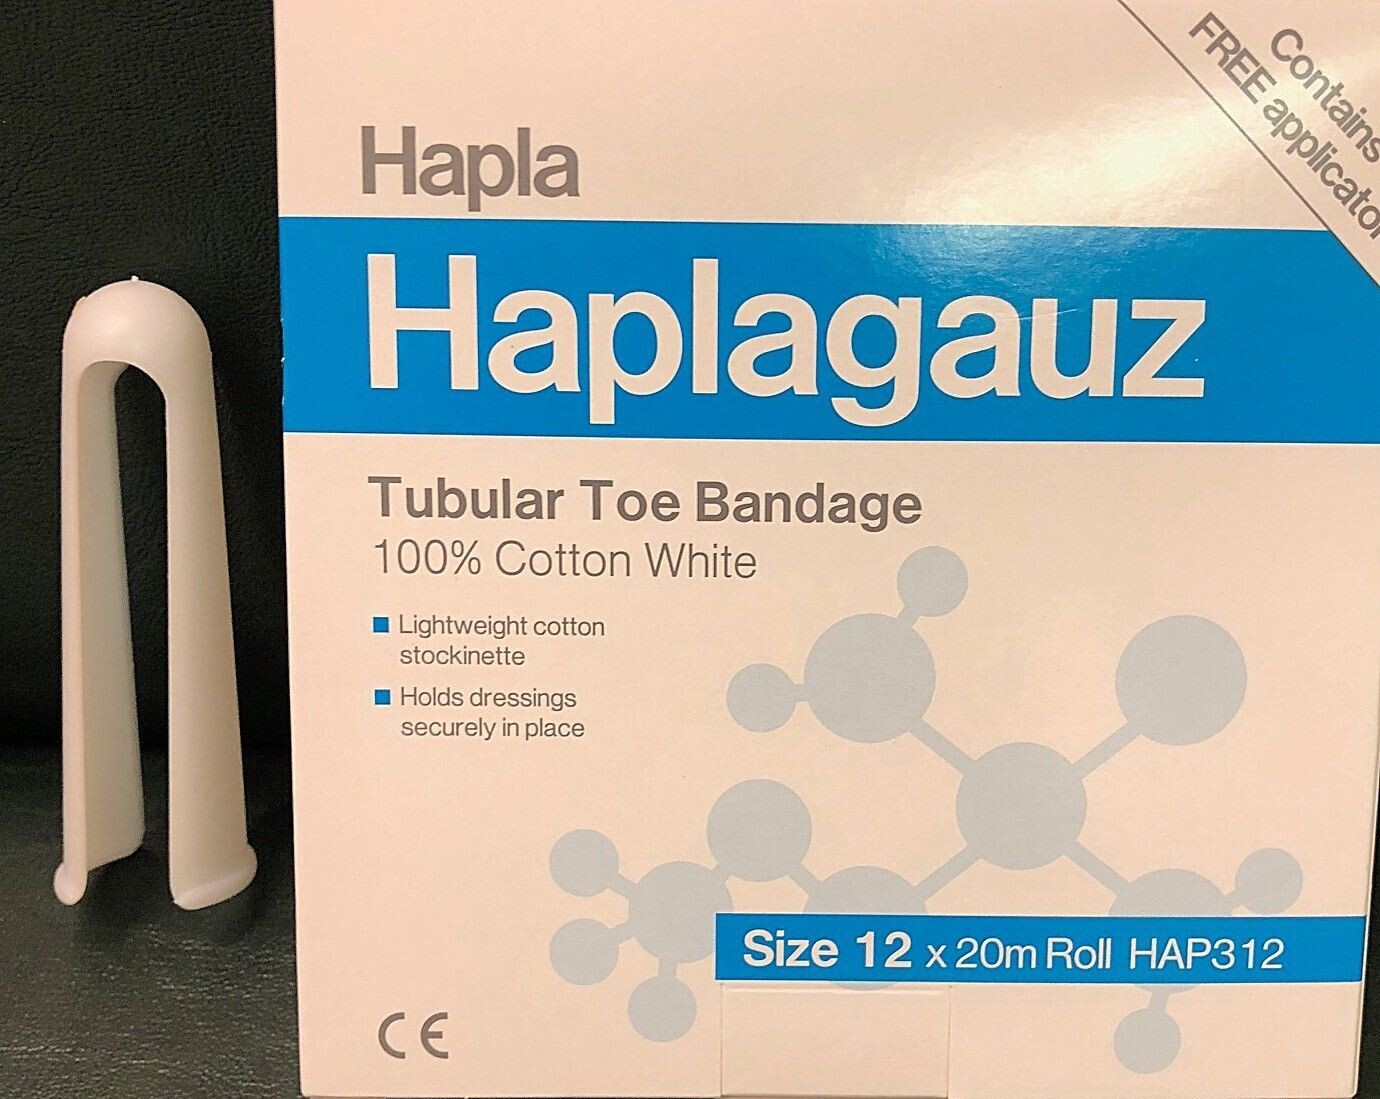 Haplagauz Tubular bandage large toes including applicator 20 Metres Size 01
Multiple available (Multibuy)